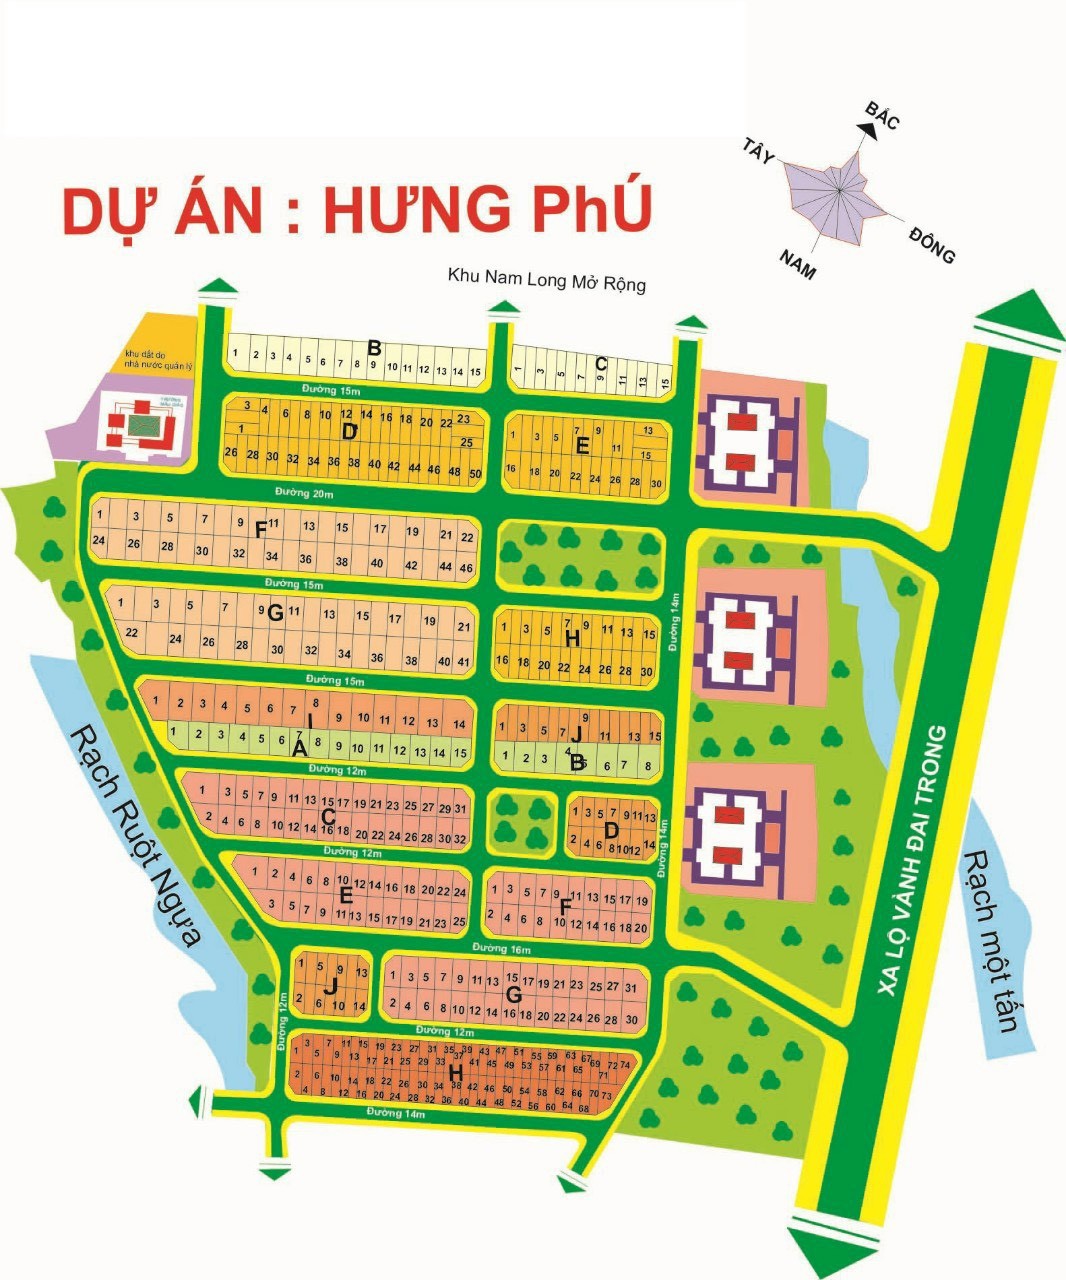 Chuyên dịch vụ kí gửi bán nhanh các lô đất tại KDC Hưng Phú, bảm đảm ra hàng nhanh giá canh tranh. 1